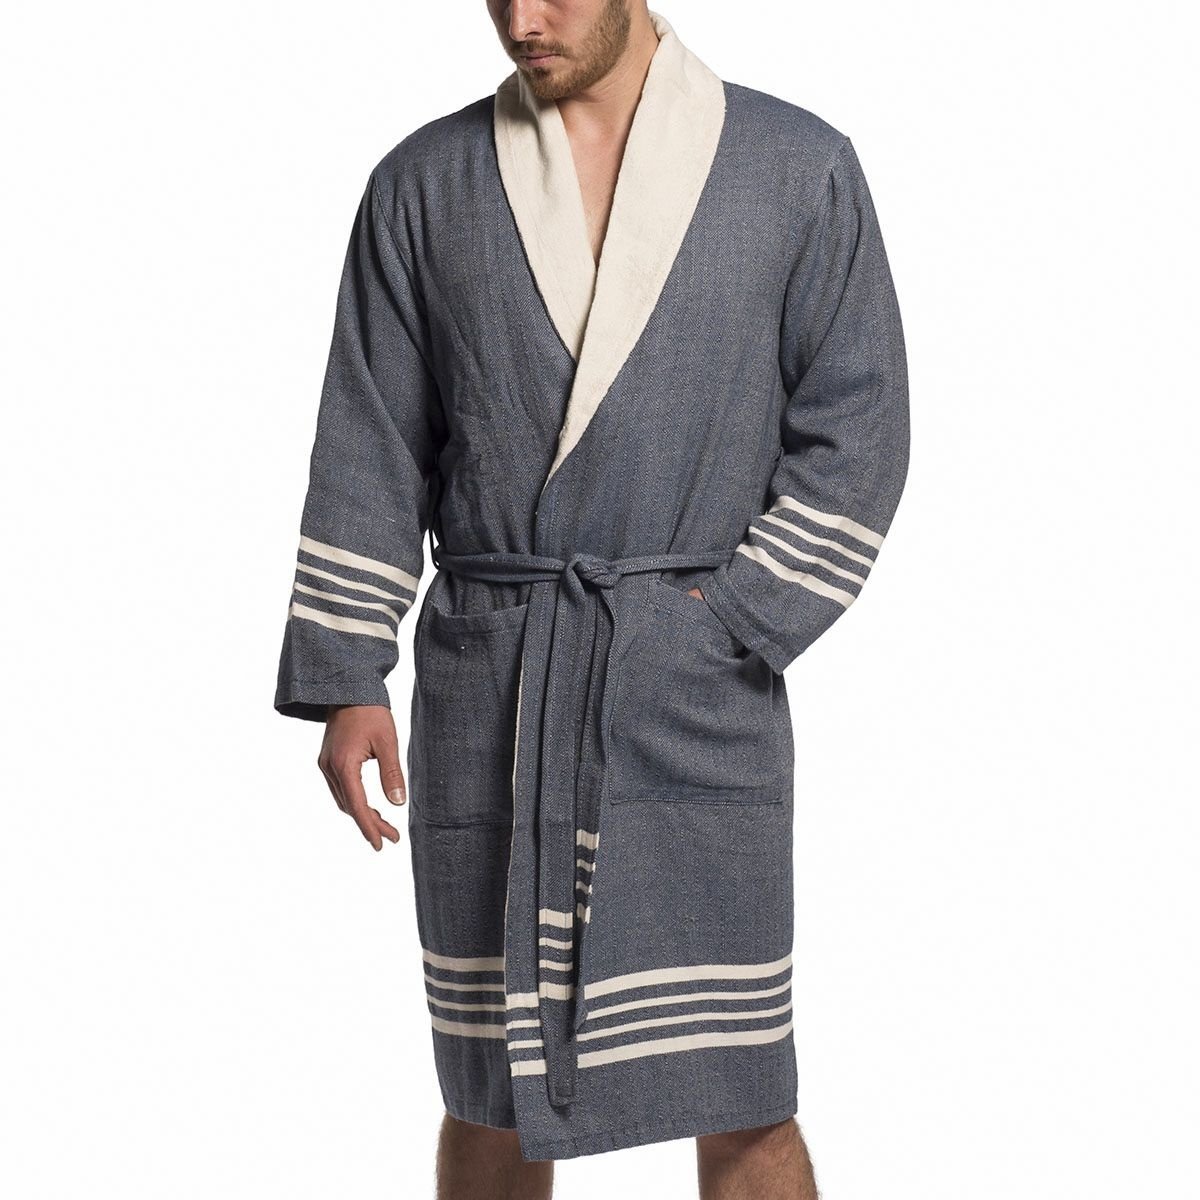 landen decaan jacht Omhul jezelf in deze heerlijk zachte badstof badjas. Ideaal voor sauna -  Hamamdoeken.com